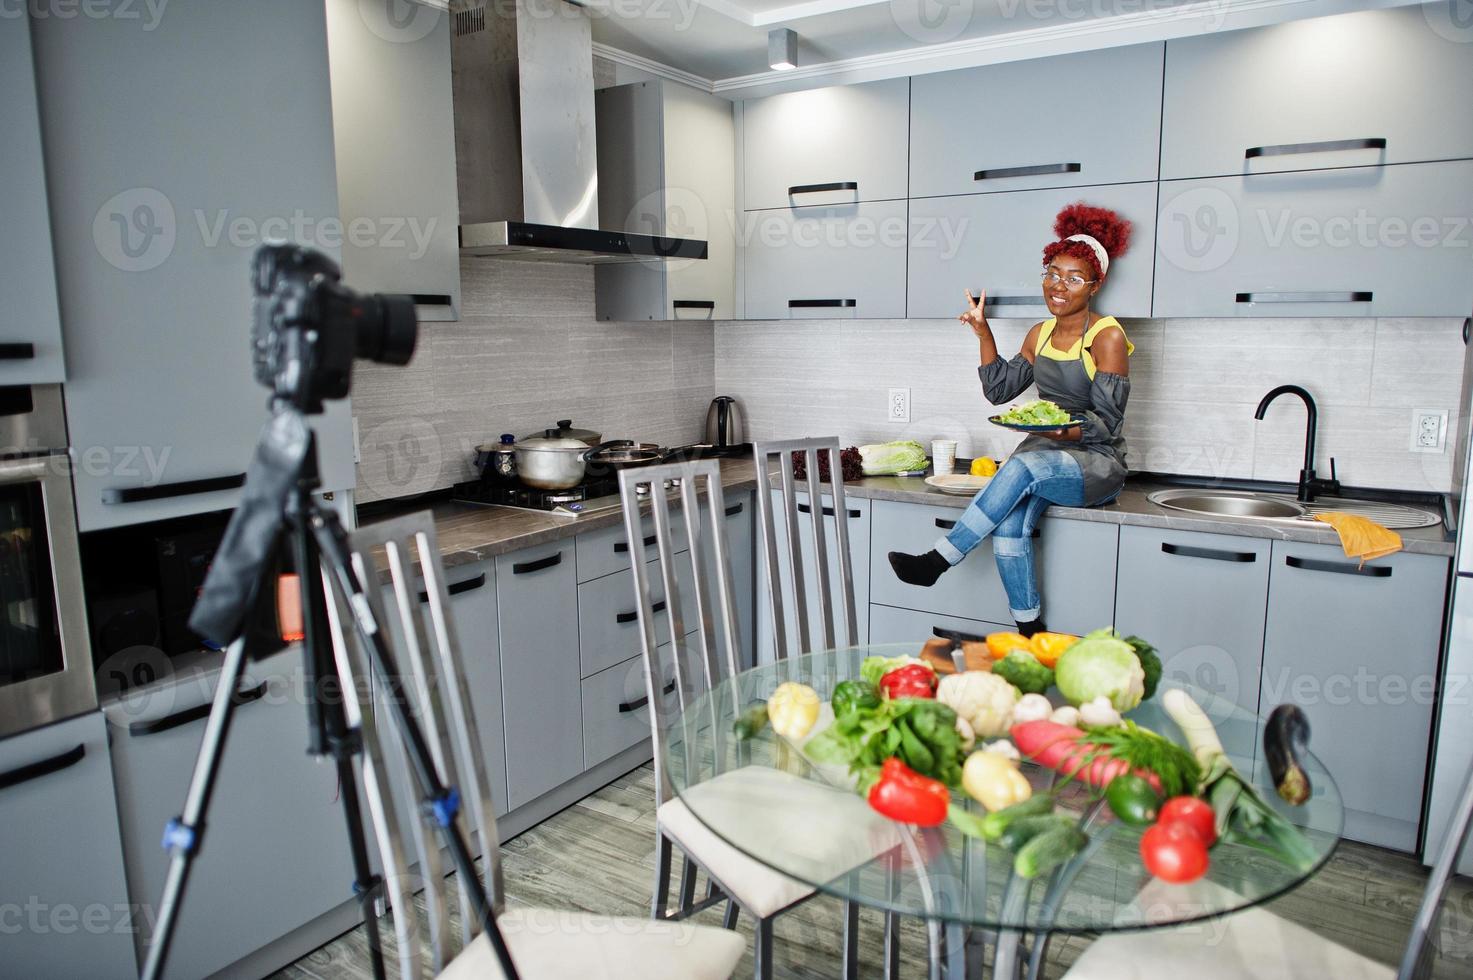 femme afro-américaine filmant son blog diffusé sur des aliments sains dans la cuisine à domicile. elle tient une assiette avec de la salade. photo